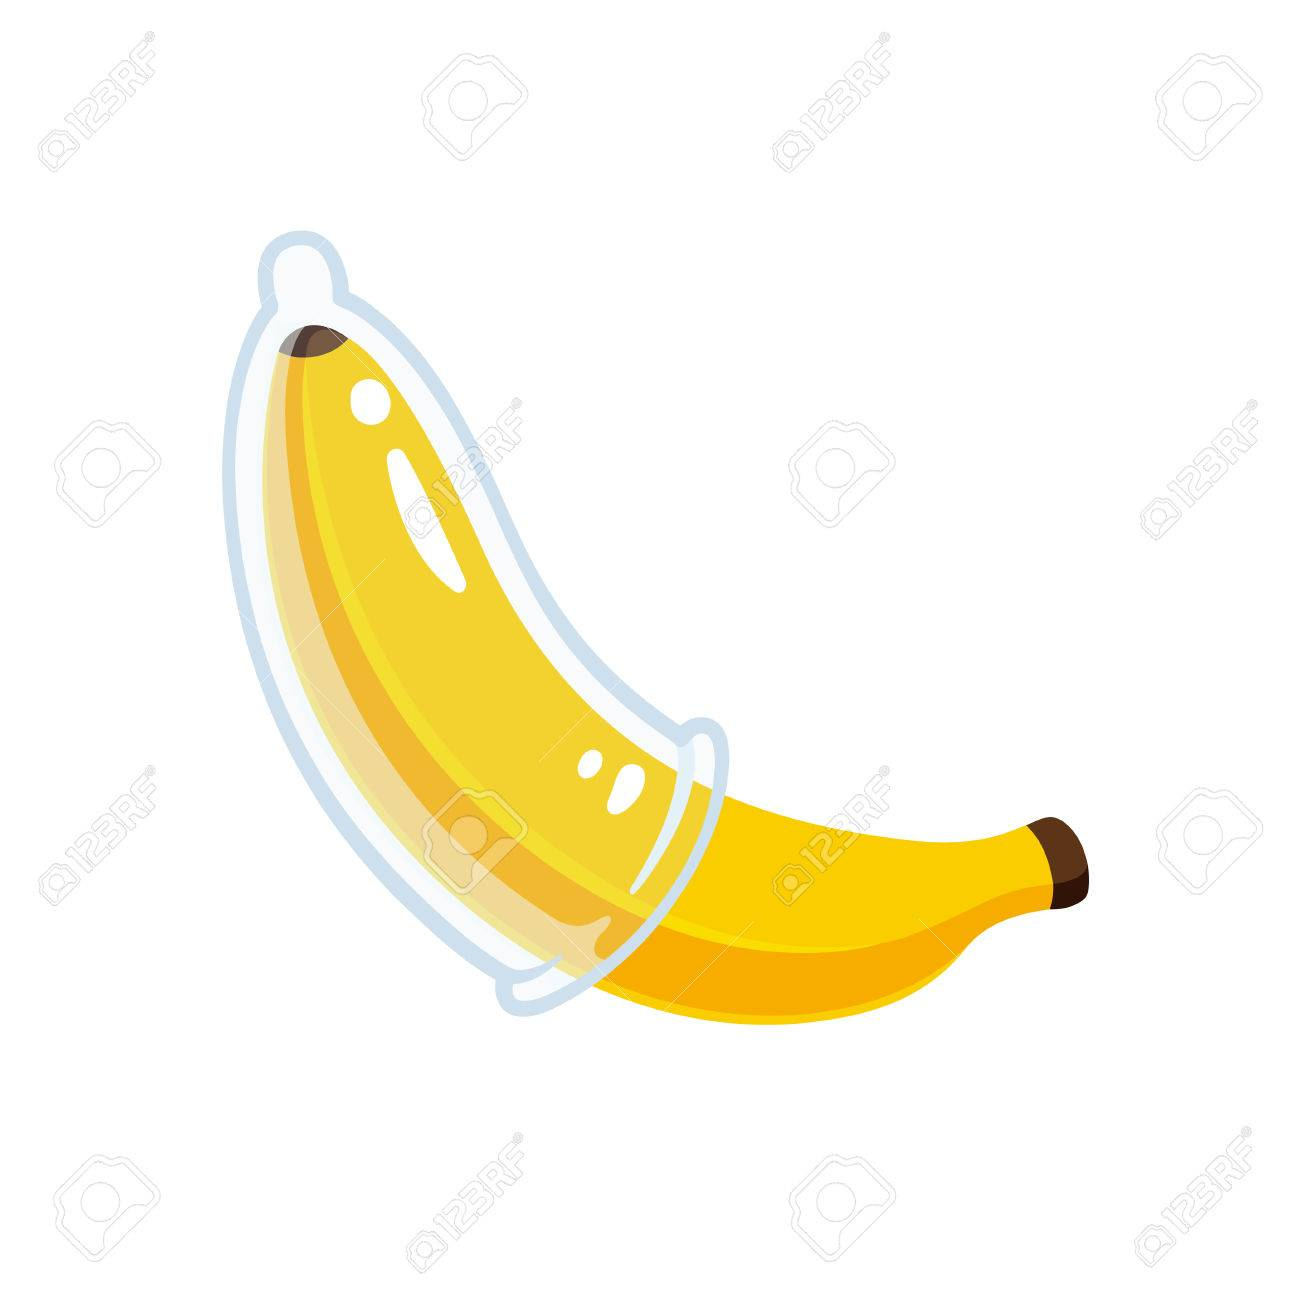 Banane De Dessin Animé Avec Illustration De Préservatif. E Sûr,  Prévention Des Mst Et Concept De Sensibilisation Au Sida. concernant Dessiner Une Banane 